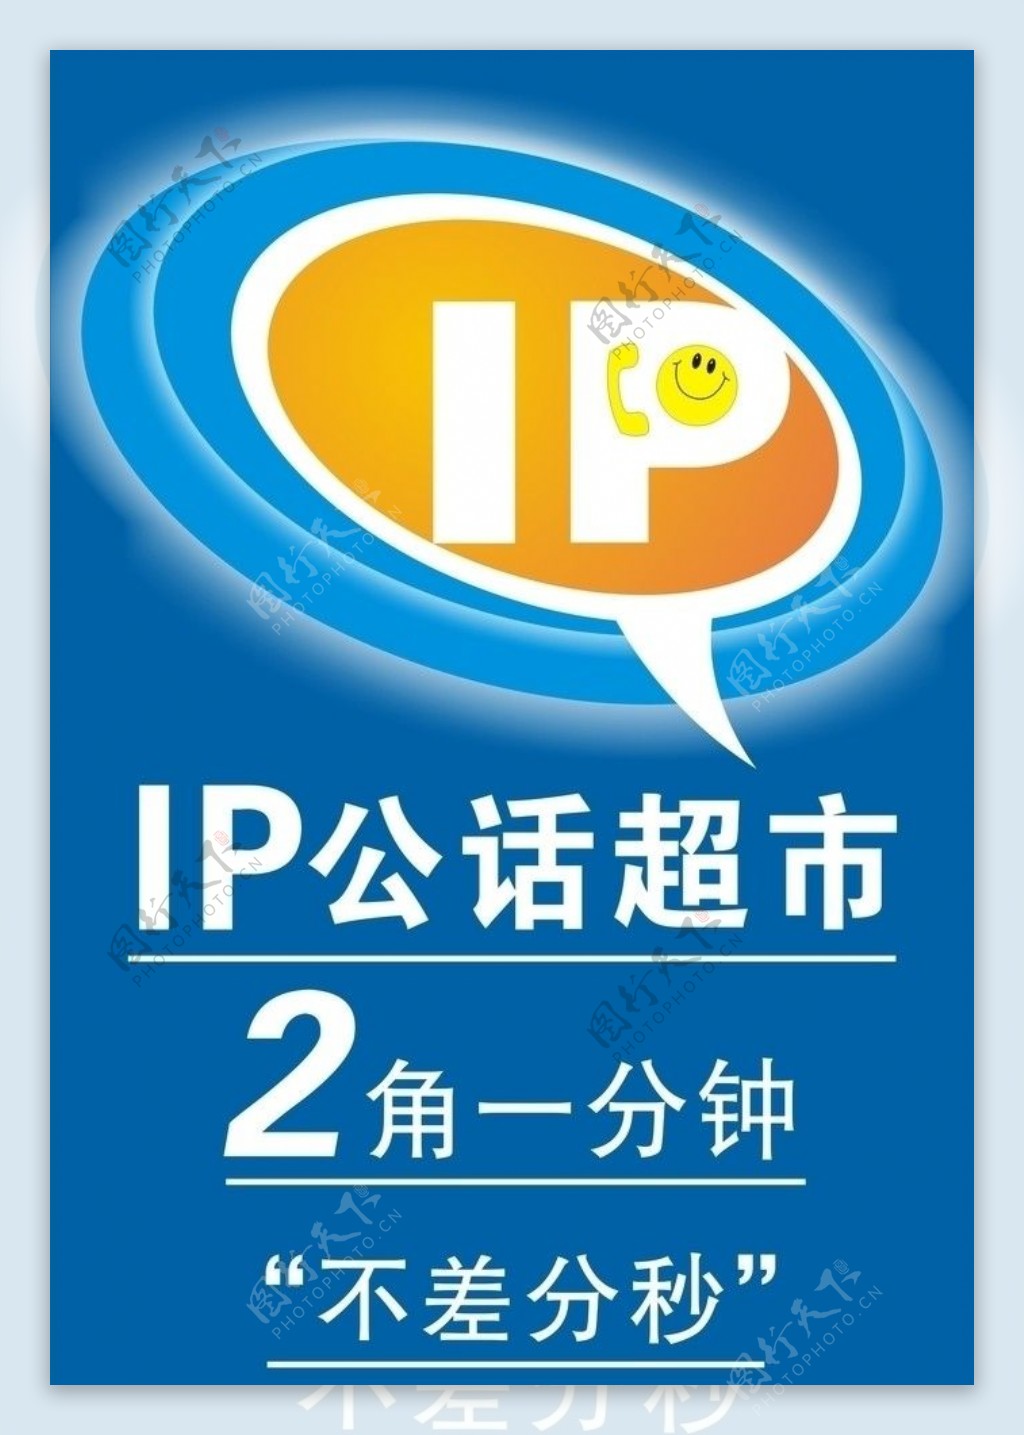 IP公话超市图片